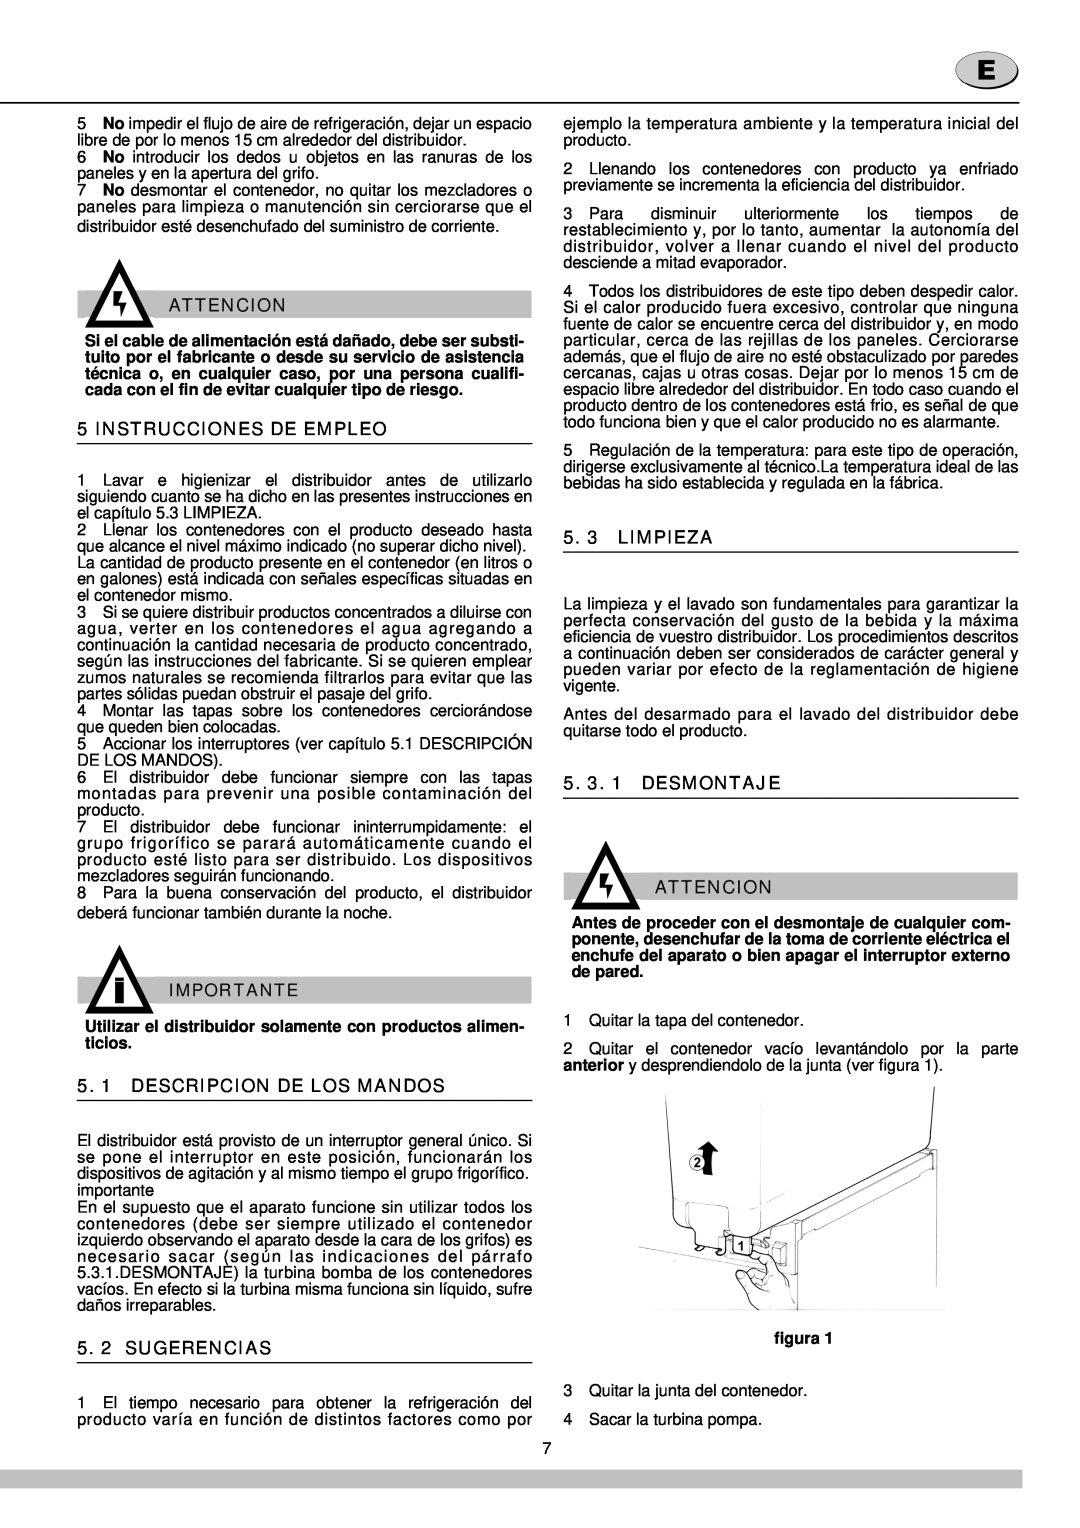 Cecilware 12-20 UL Instrucciones De Empleo, 5. 1 DESCRIPCION DE LOS MANDOS, 5. 2 SUGERENCIAS, 5. 3 LIMPIEZA, Attencion 